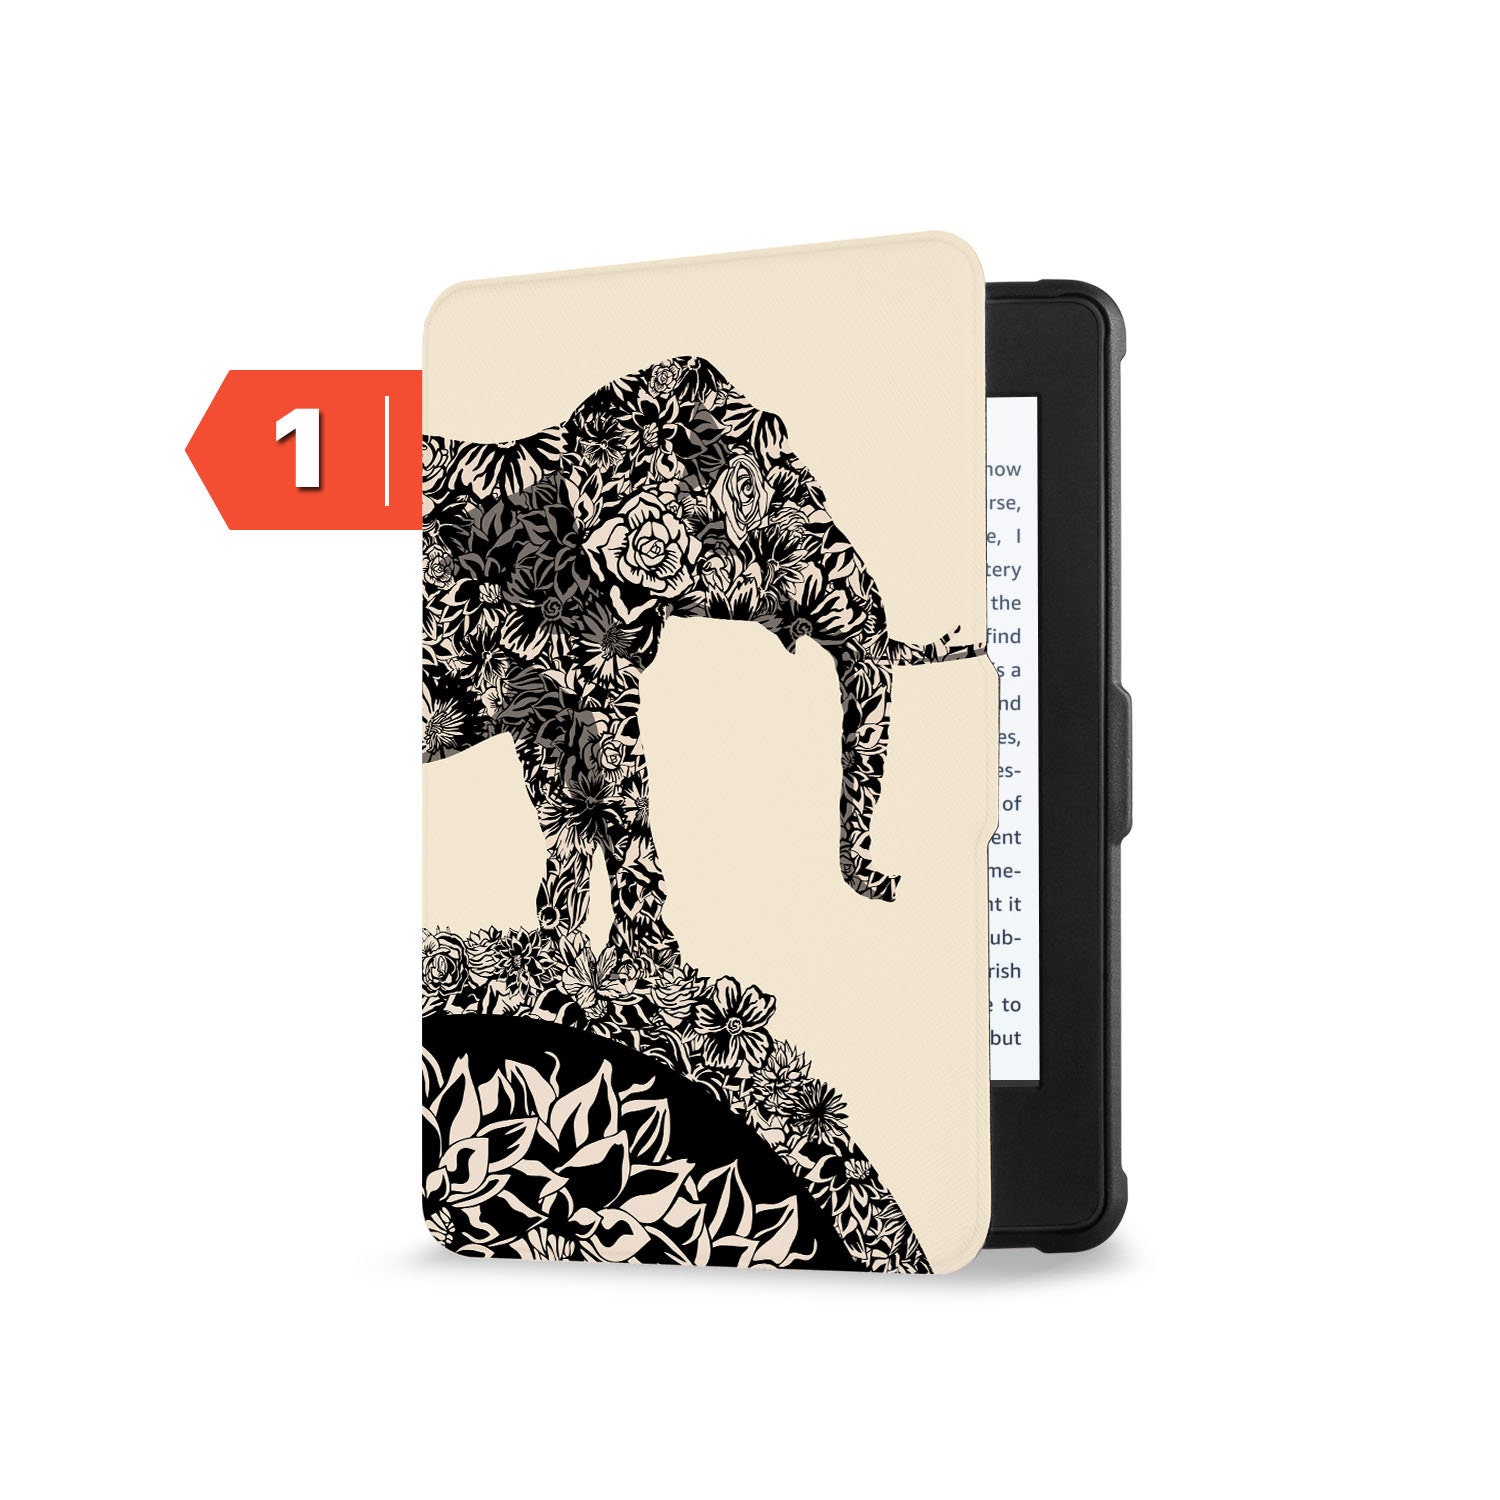 Étui pour Kindle Paperwhite 6 pouces 2012,2013,2015,2016 Version, Smart  Wake Sleep